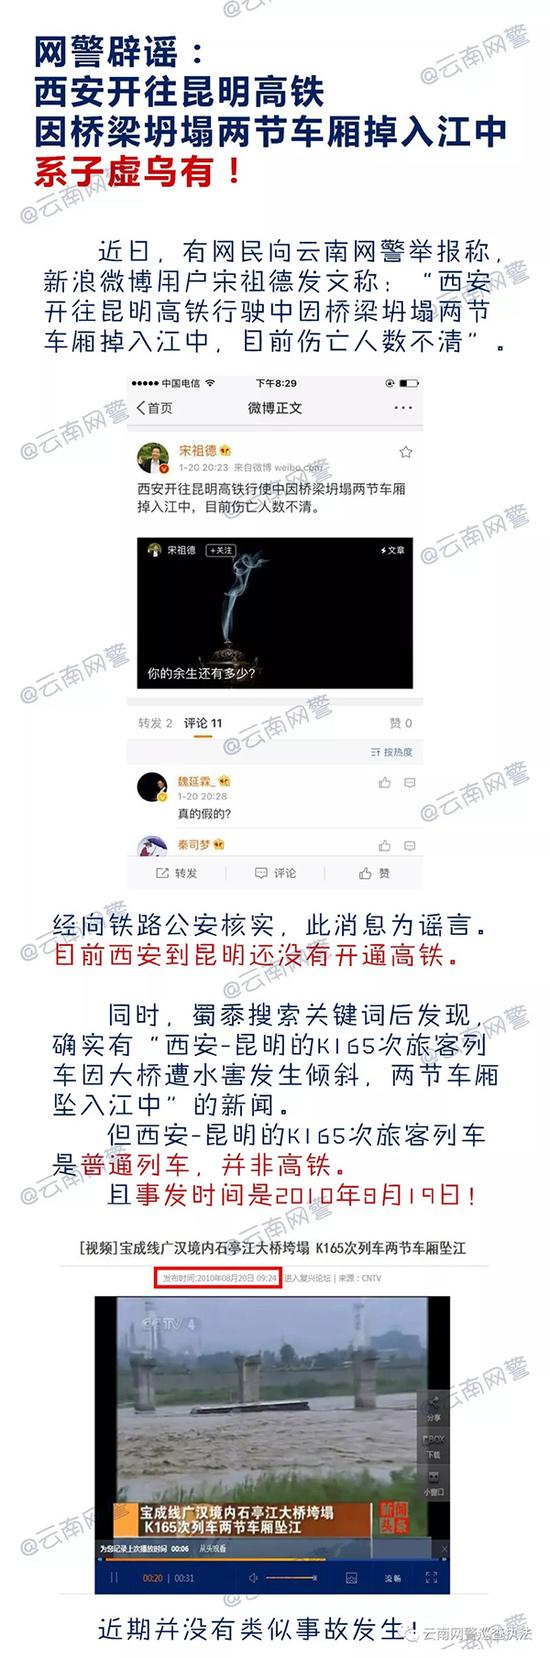 澎湃新闻:西安至昆明高铁因桥梁坍塌车厢掉入江中?警方辟谣